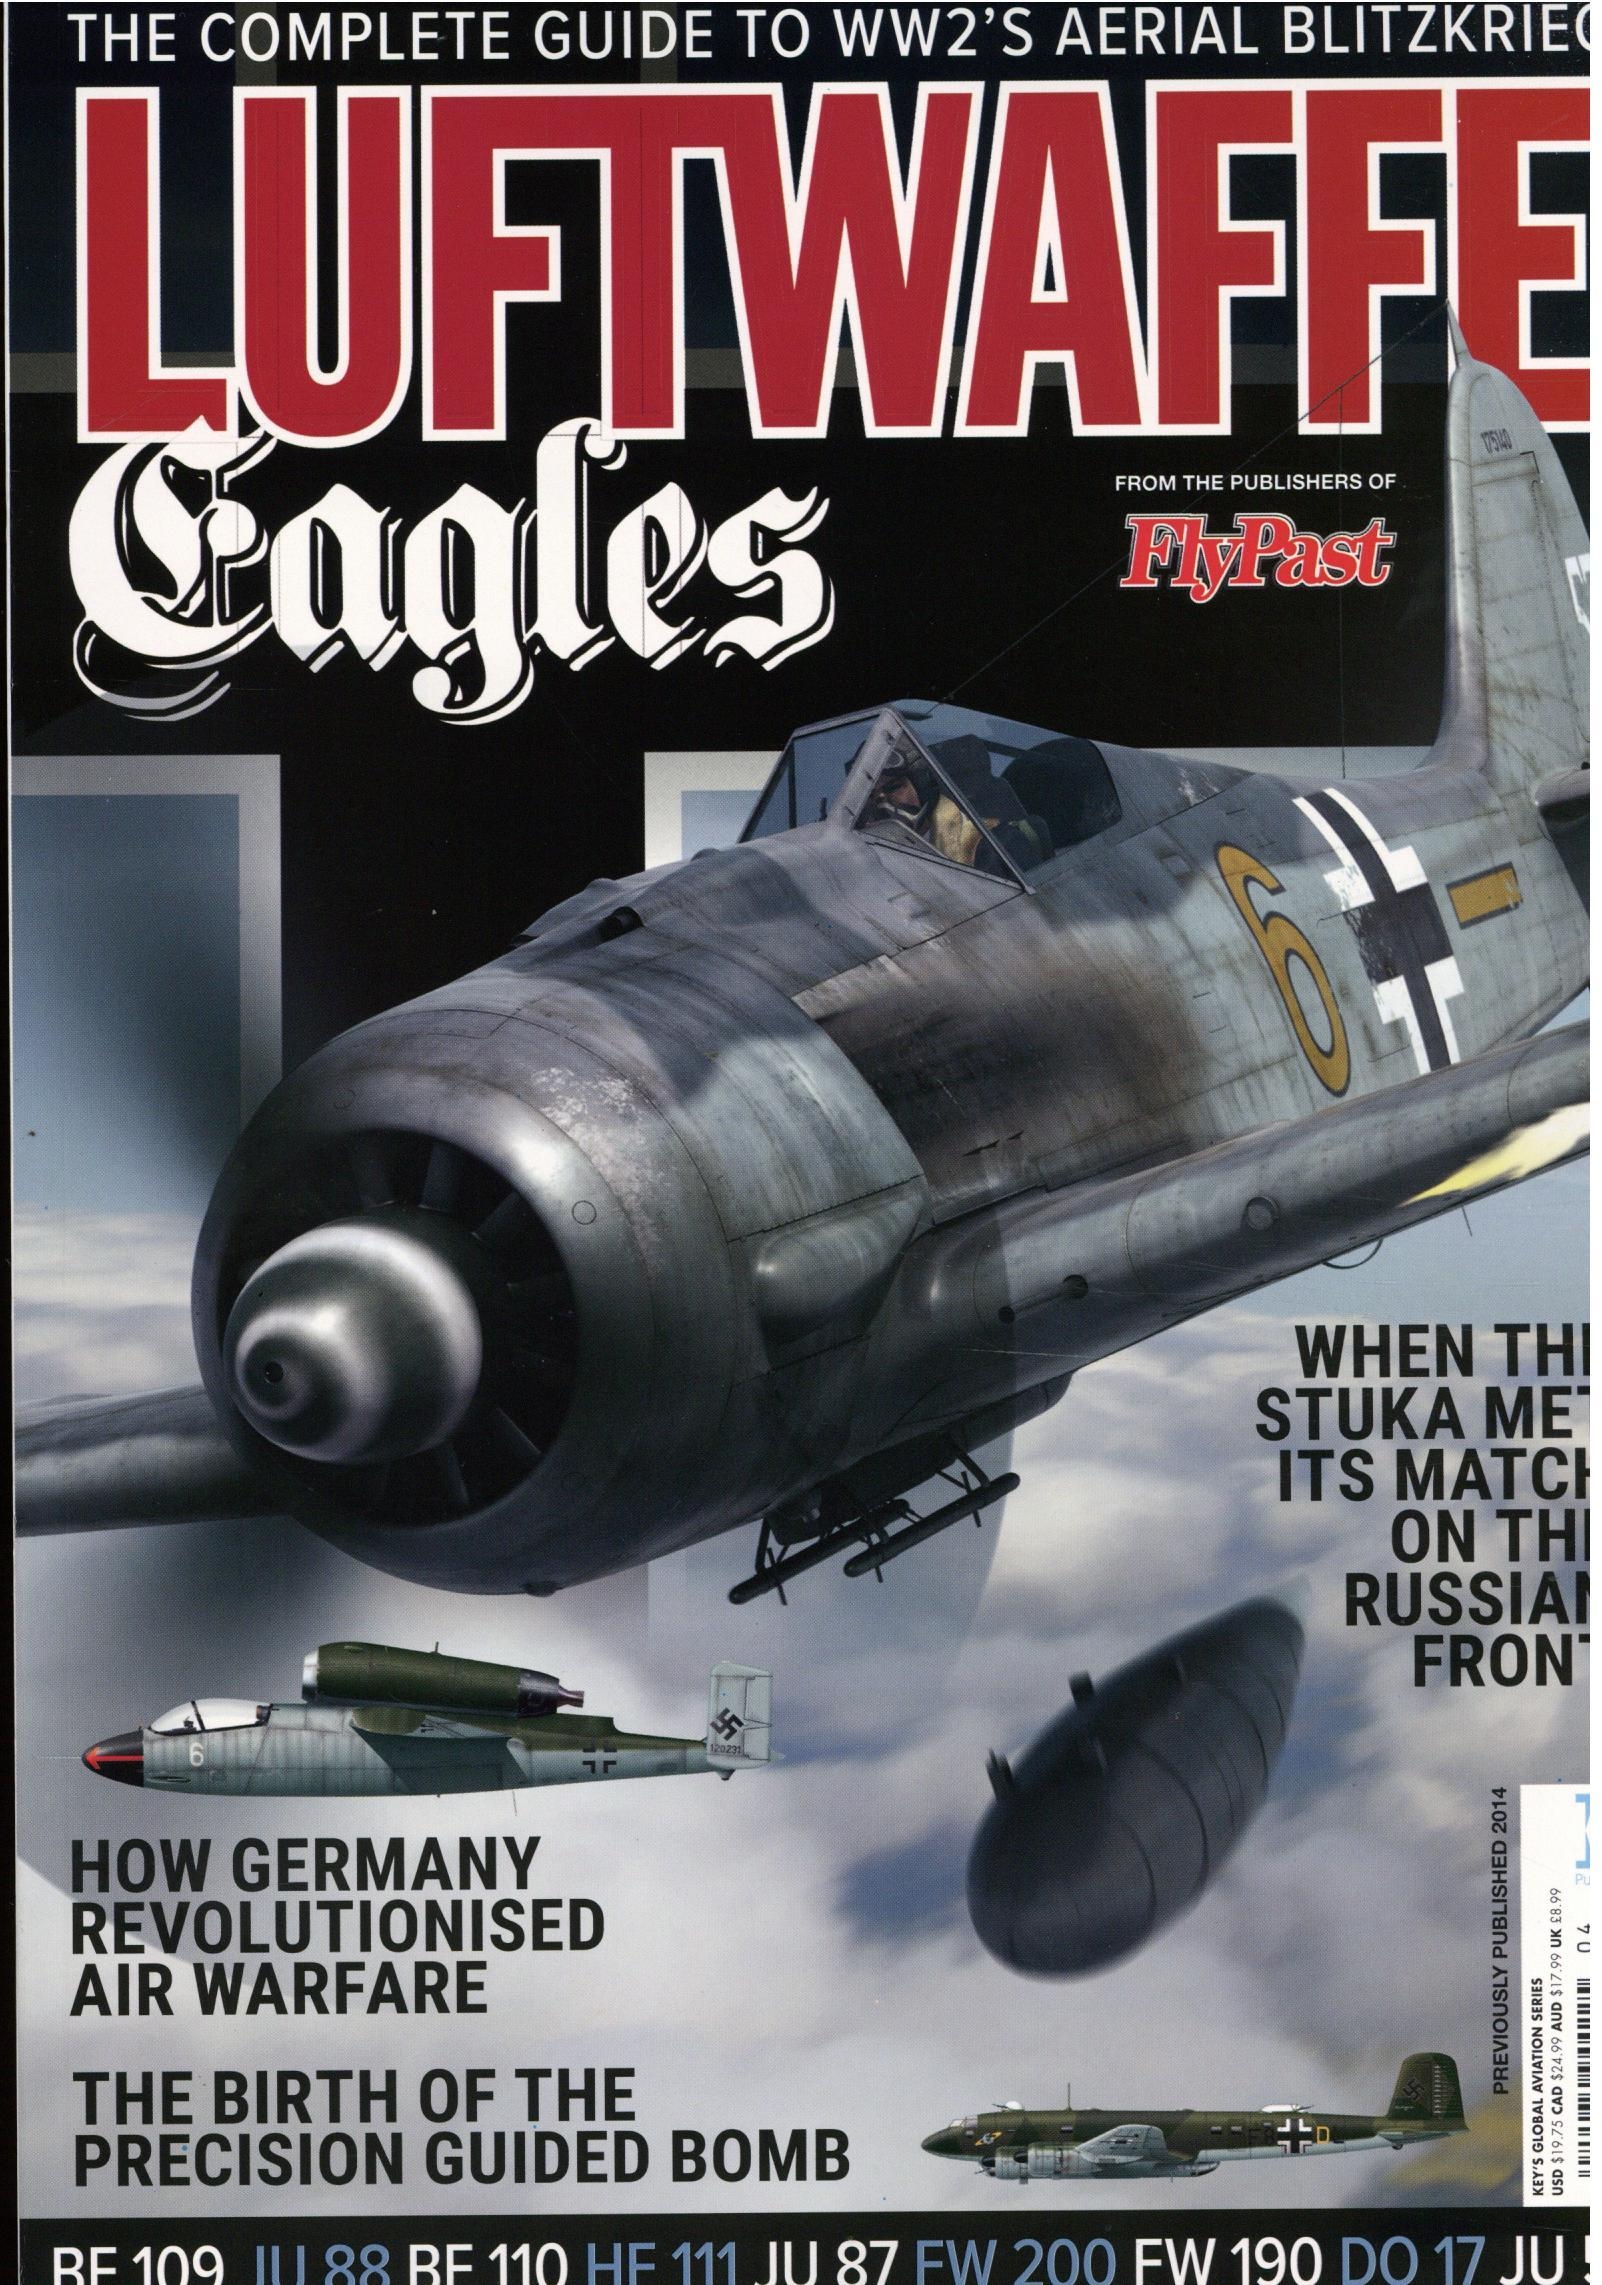 Luftwaffe Eagles